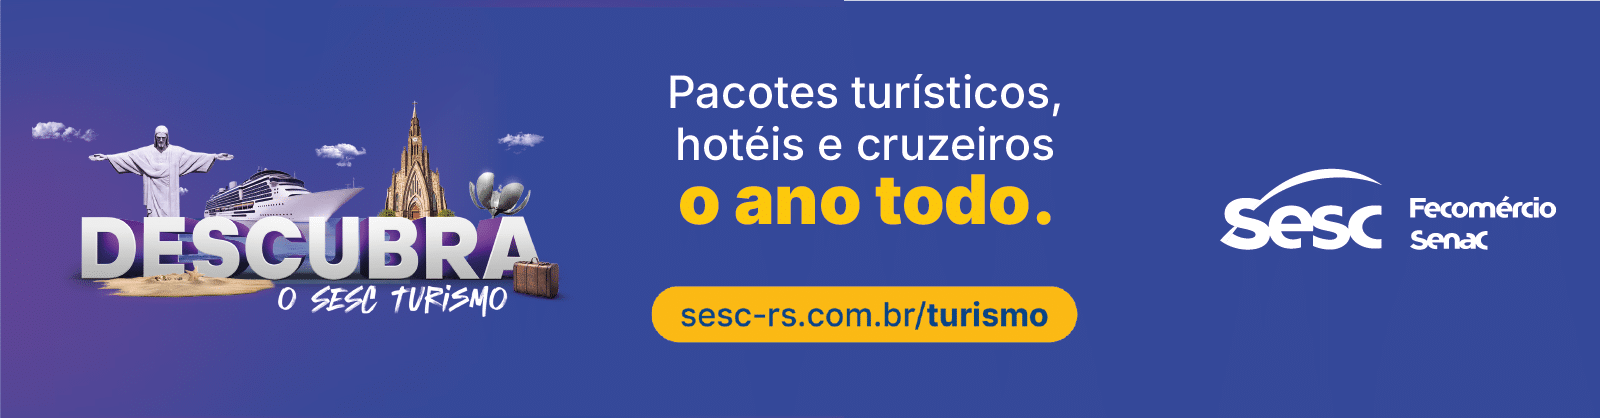 Banner SESC Pacotes Turísticos